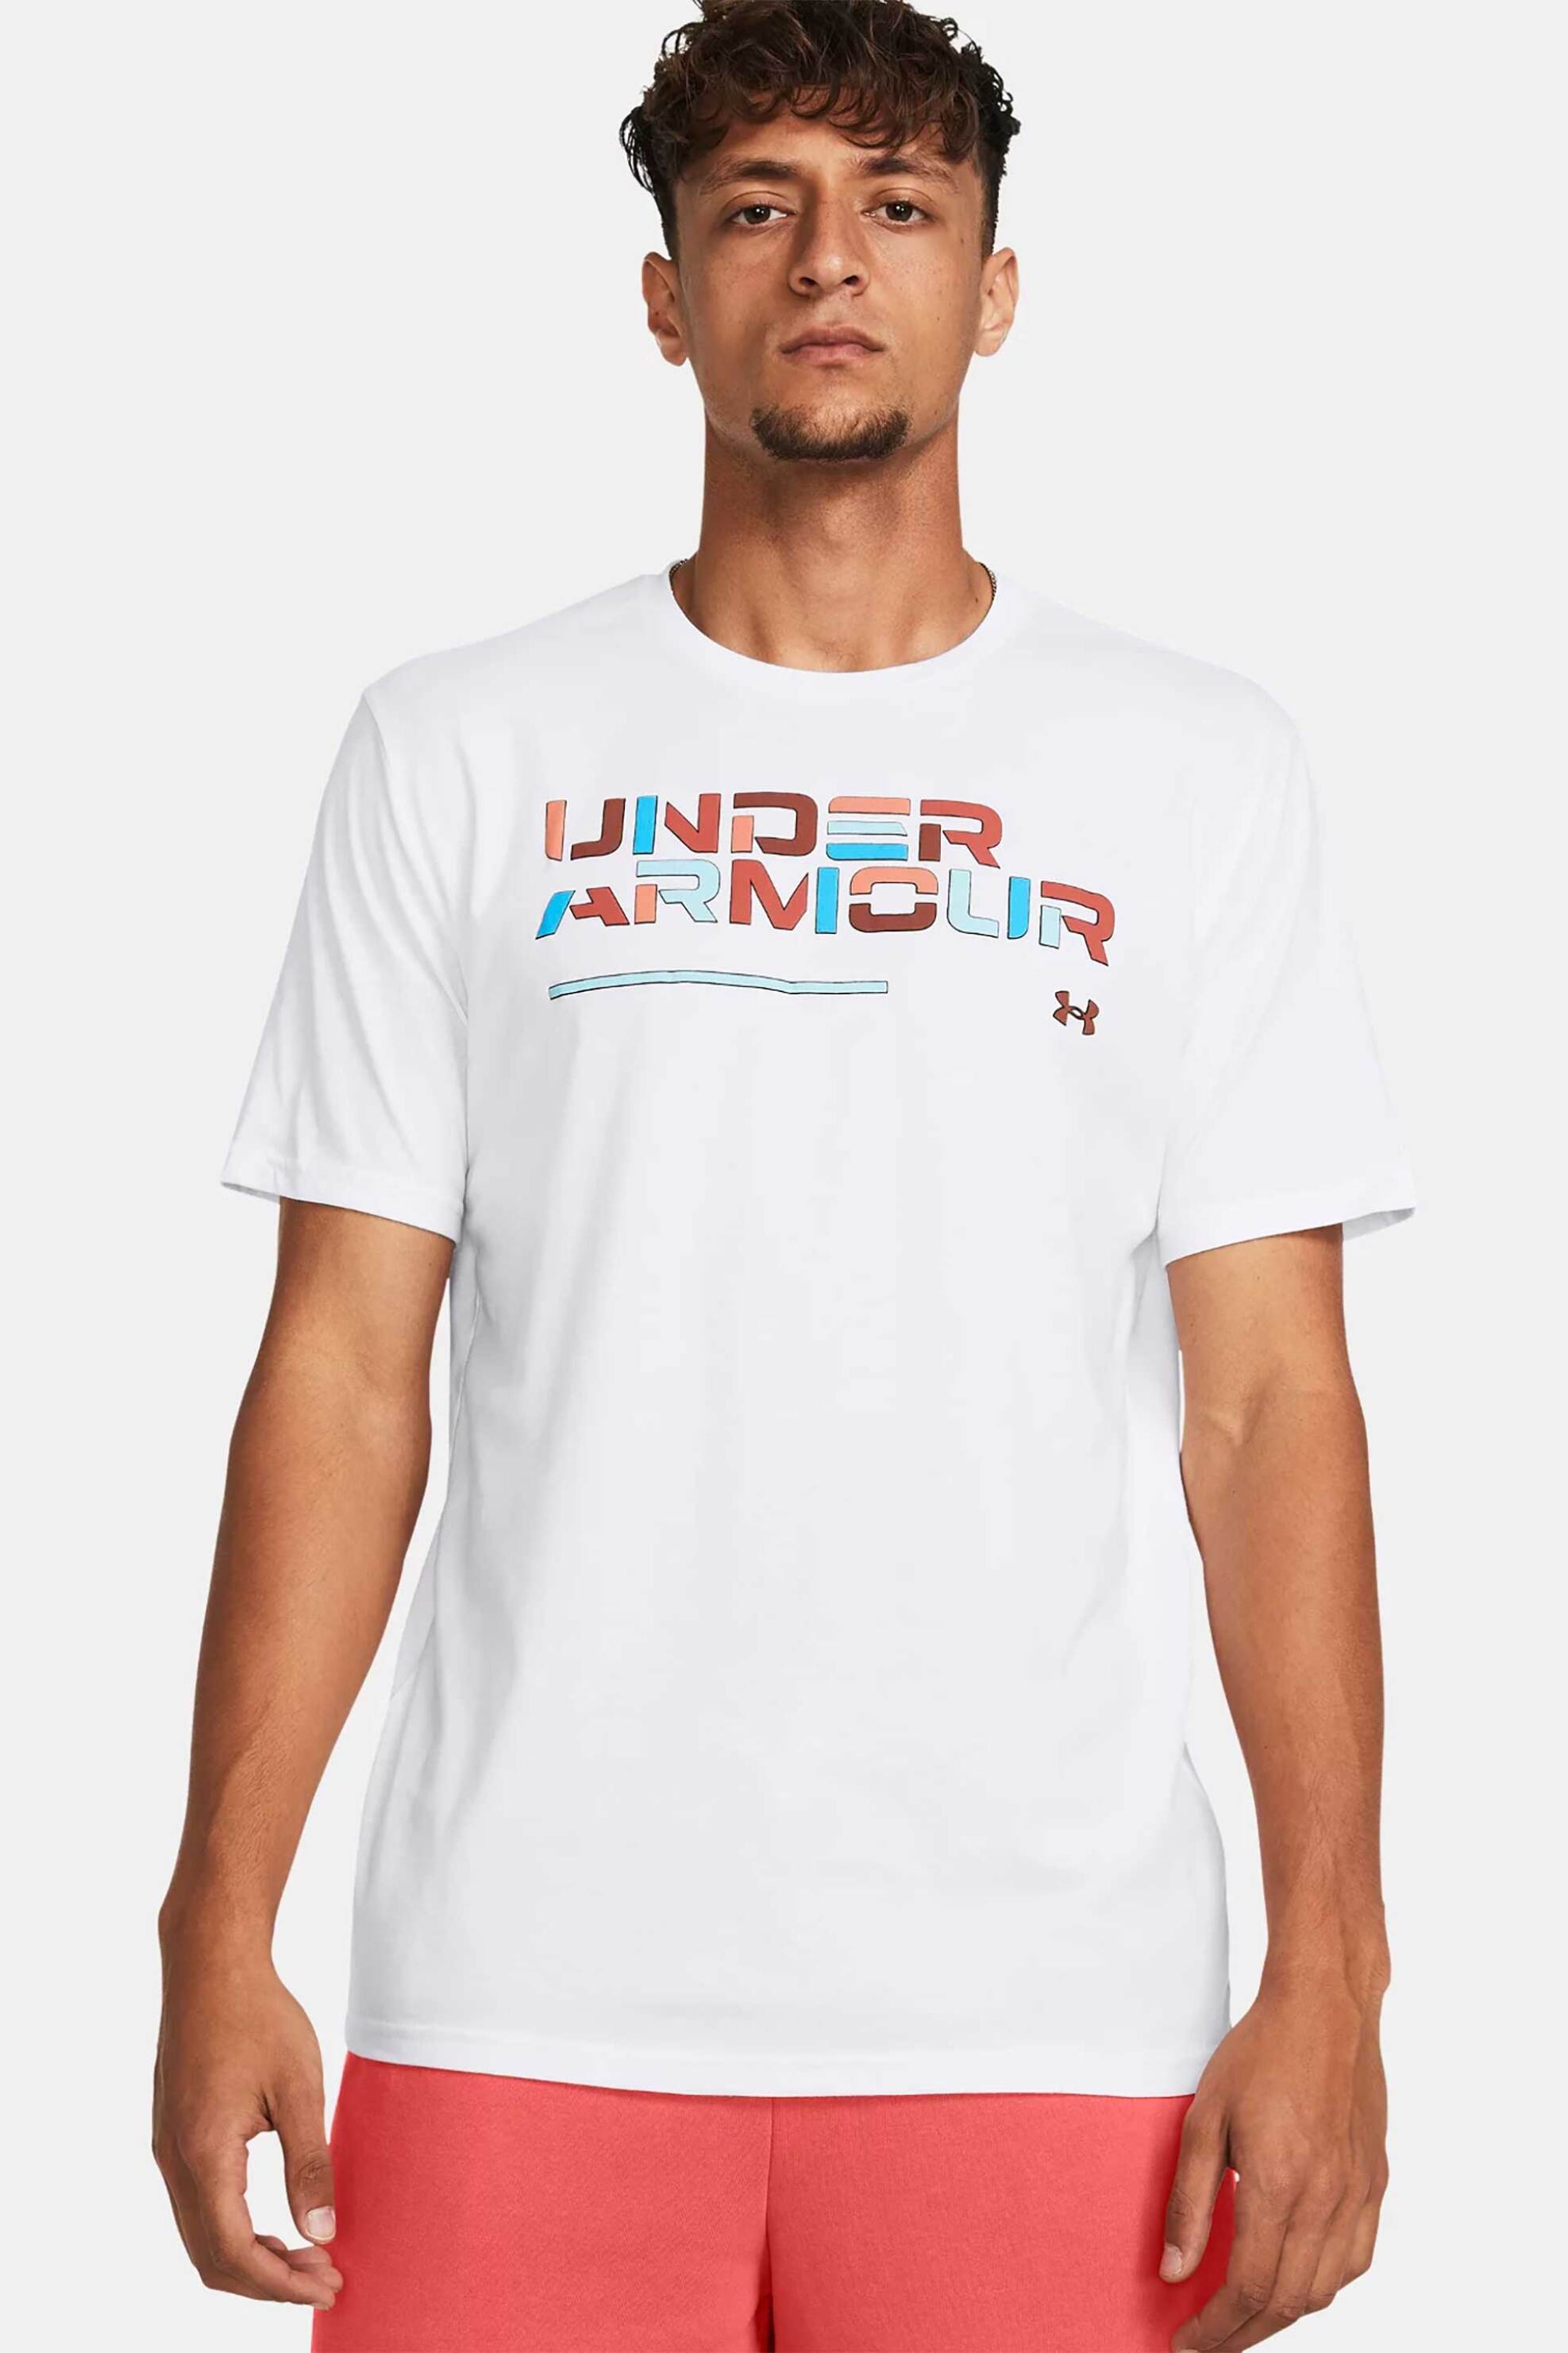 Ανδρική Μόδα > Ανδρικά Αθλητικά > Ανδρικά Αθλητικά Ρούχα > Αθλητικές Μπλούζες > Ανδρικά Αθλητικά T-Shirts Under Armour ανδρικό T-shirt με colourblocked logo print Loose Fit - 1382829 Λευκό